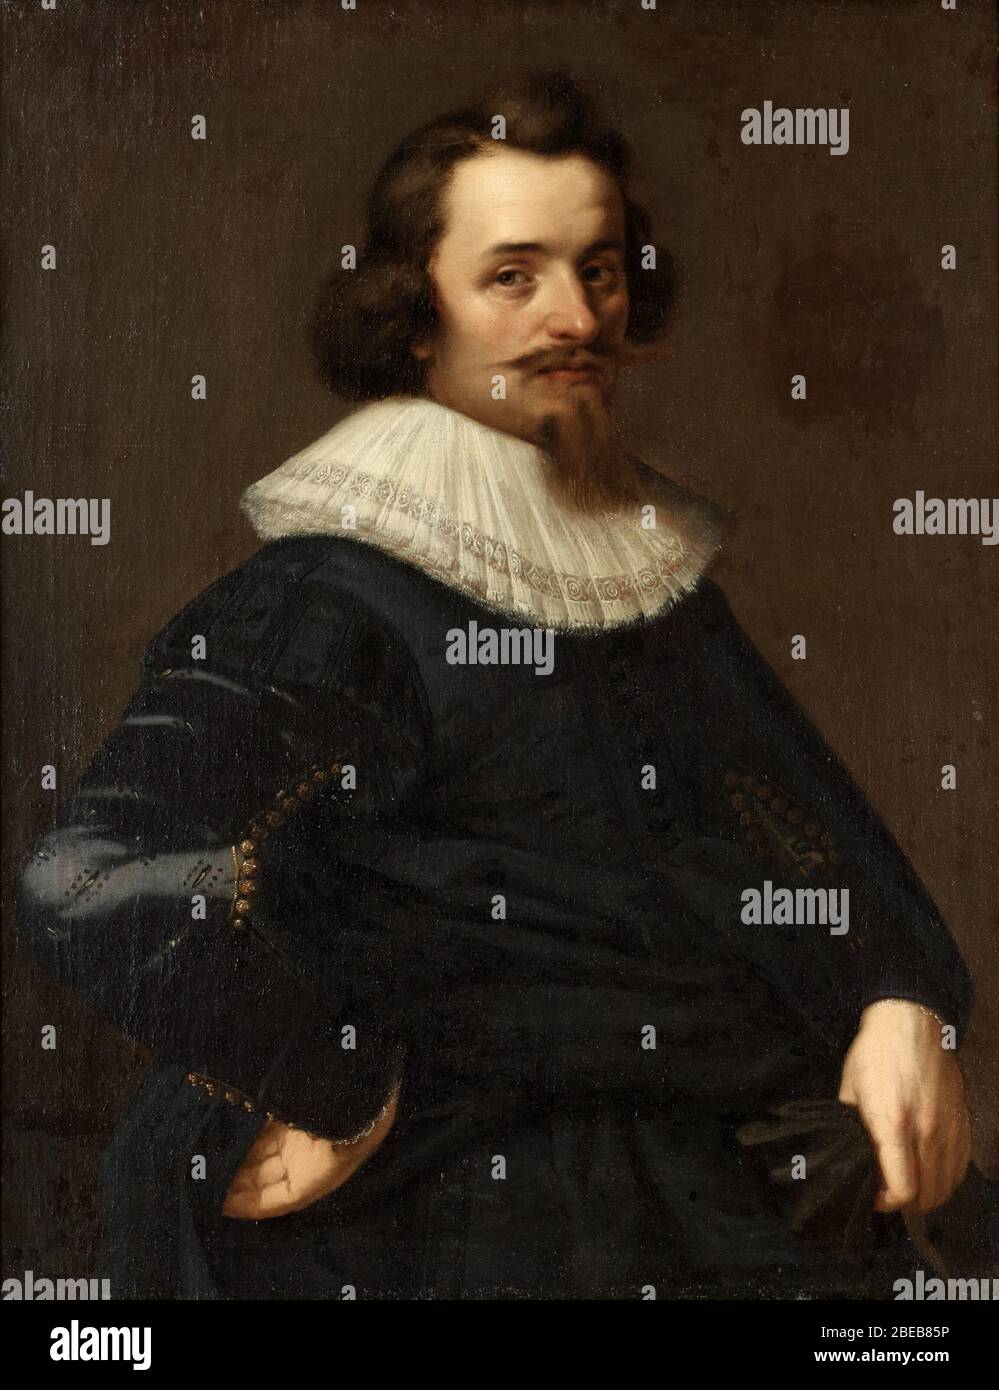 'Englisch: Baron Karl Gustafsson Banér (1598-1632)Svenska: Friherre Karl Gustafsson Banér (1598-1632); Datum des 17. Jahrhunderts QS:P571,+1650-00-00T00:00:00Z/7; ' Stockfoto